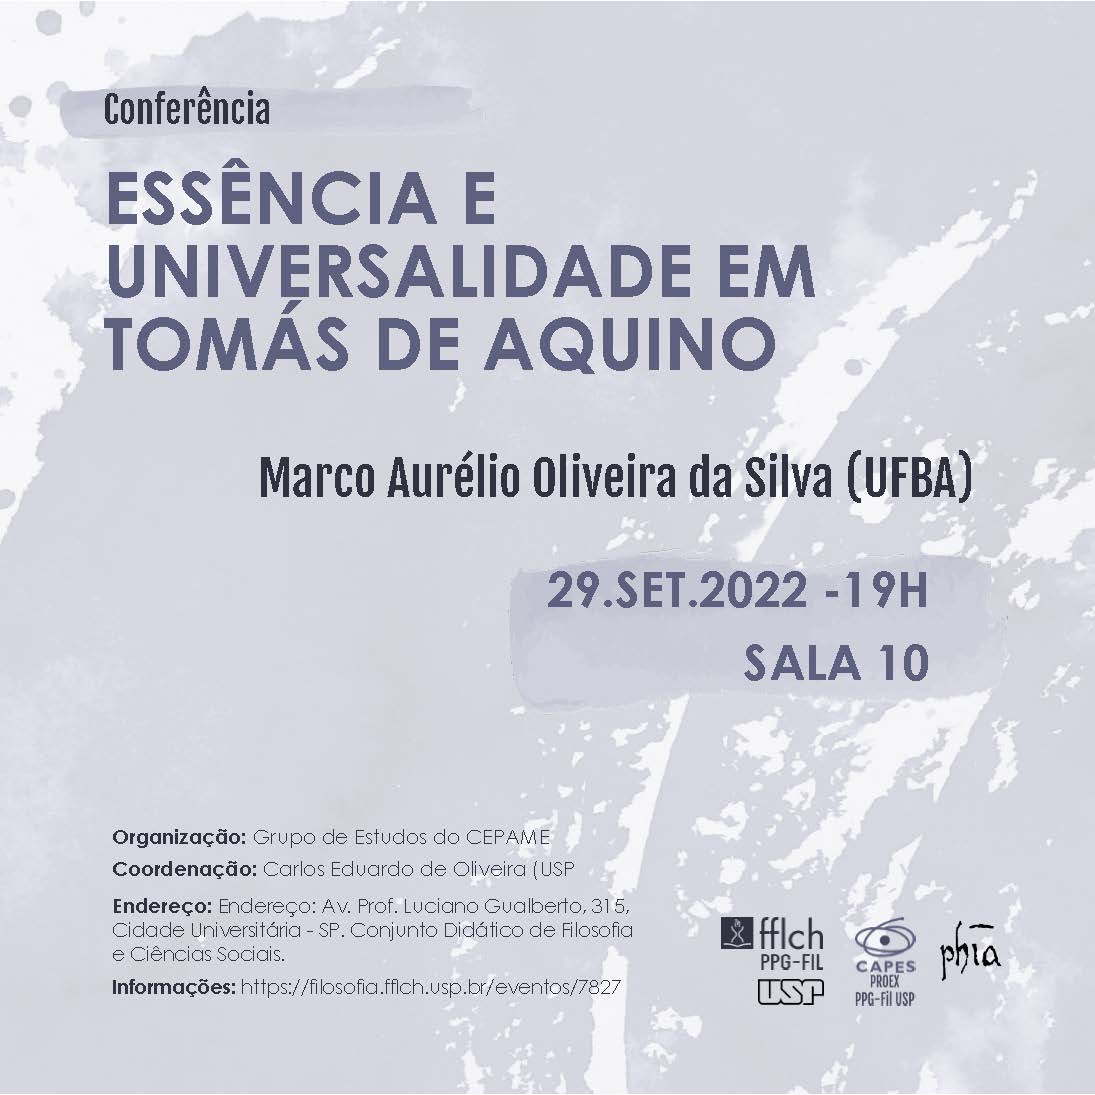 Conferência Marco Aurélio (UFBA)